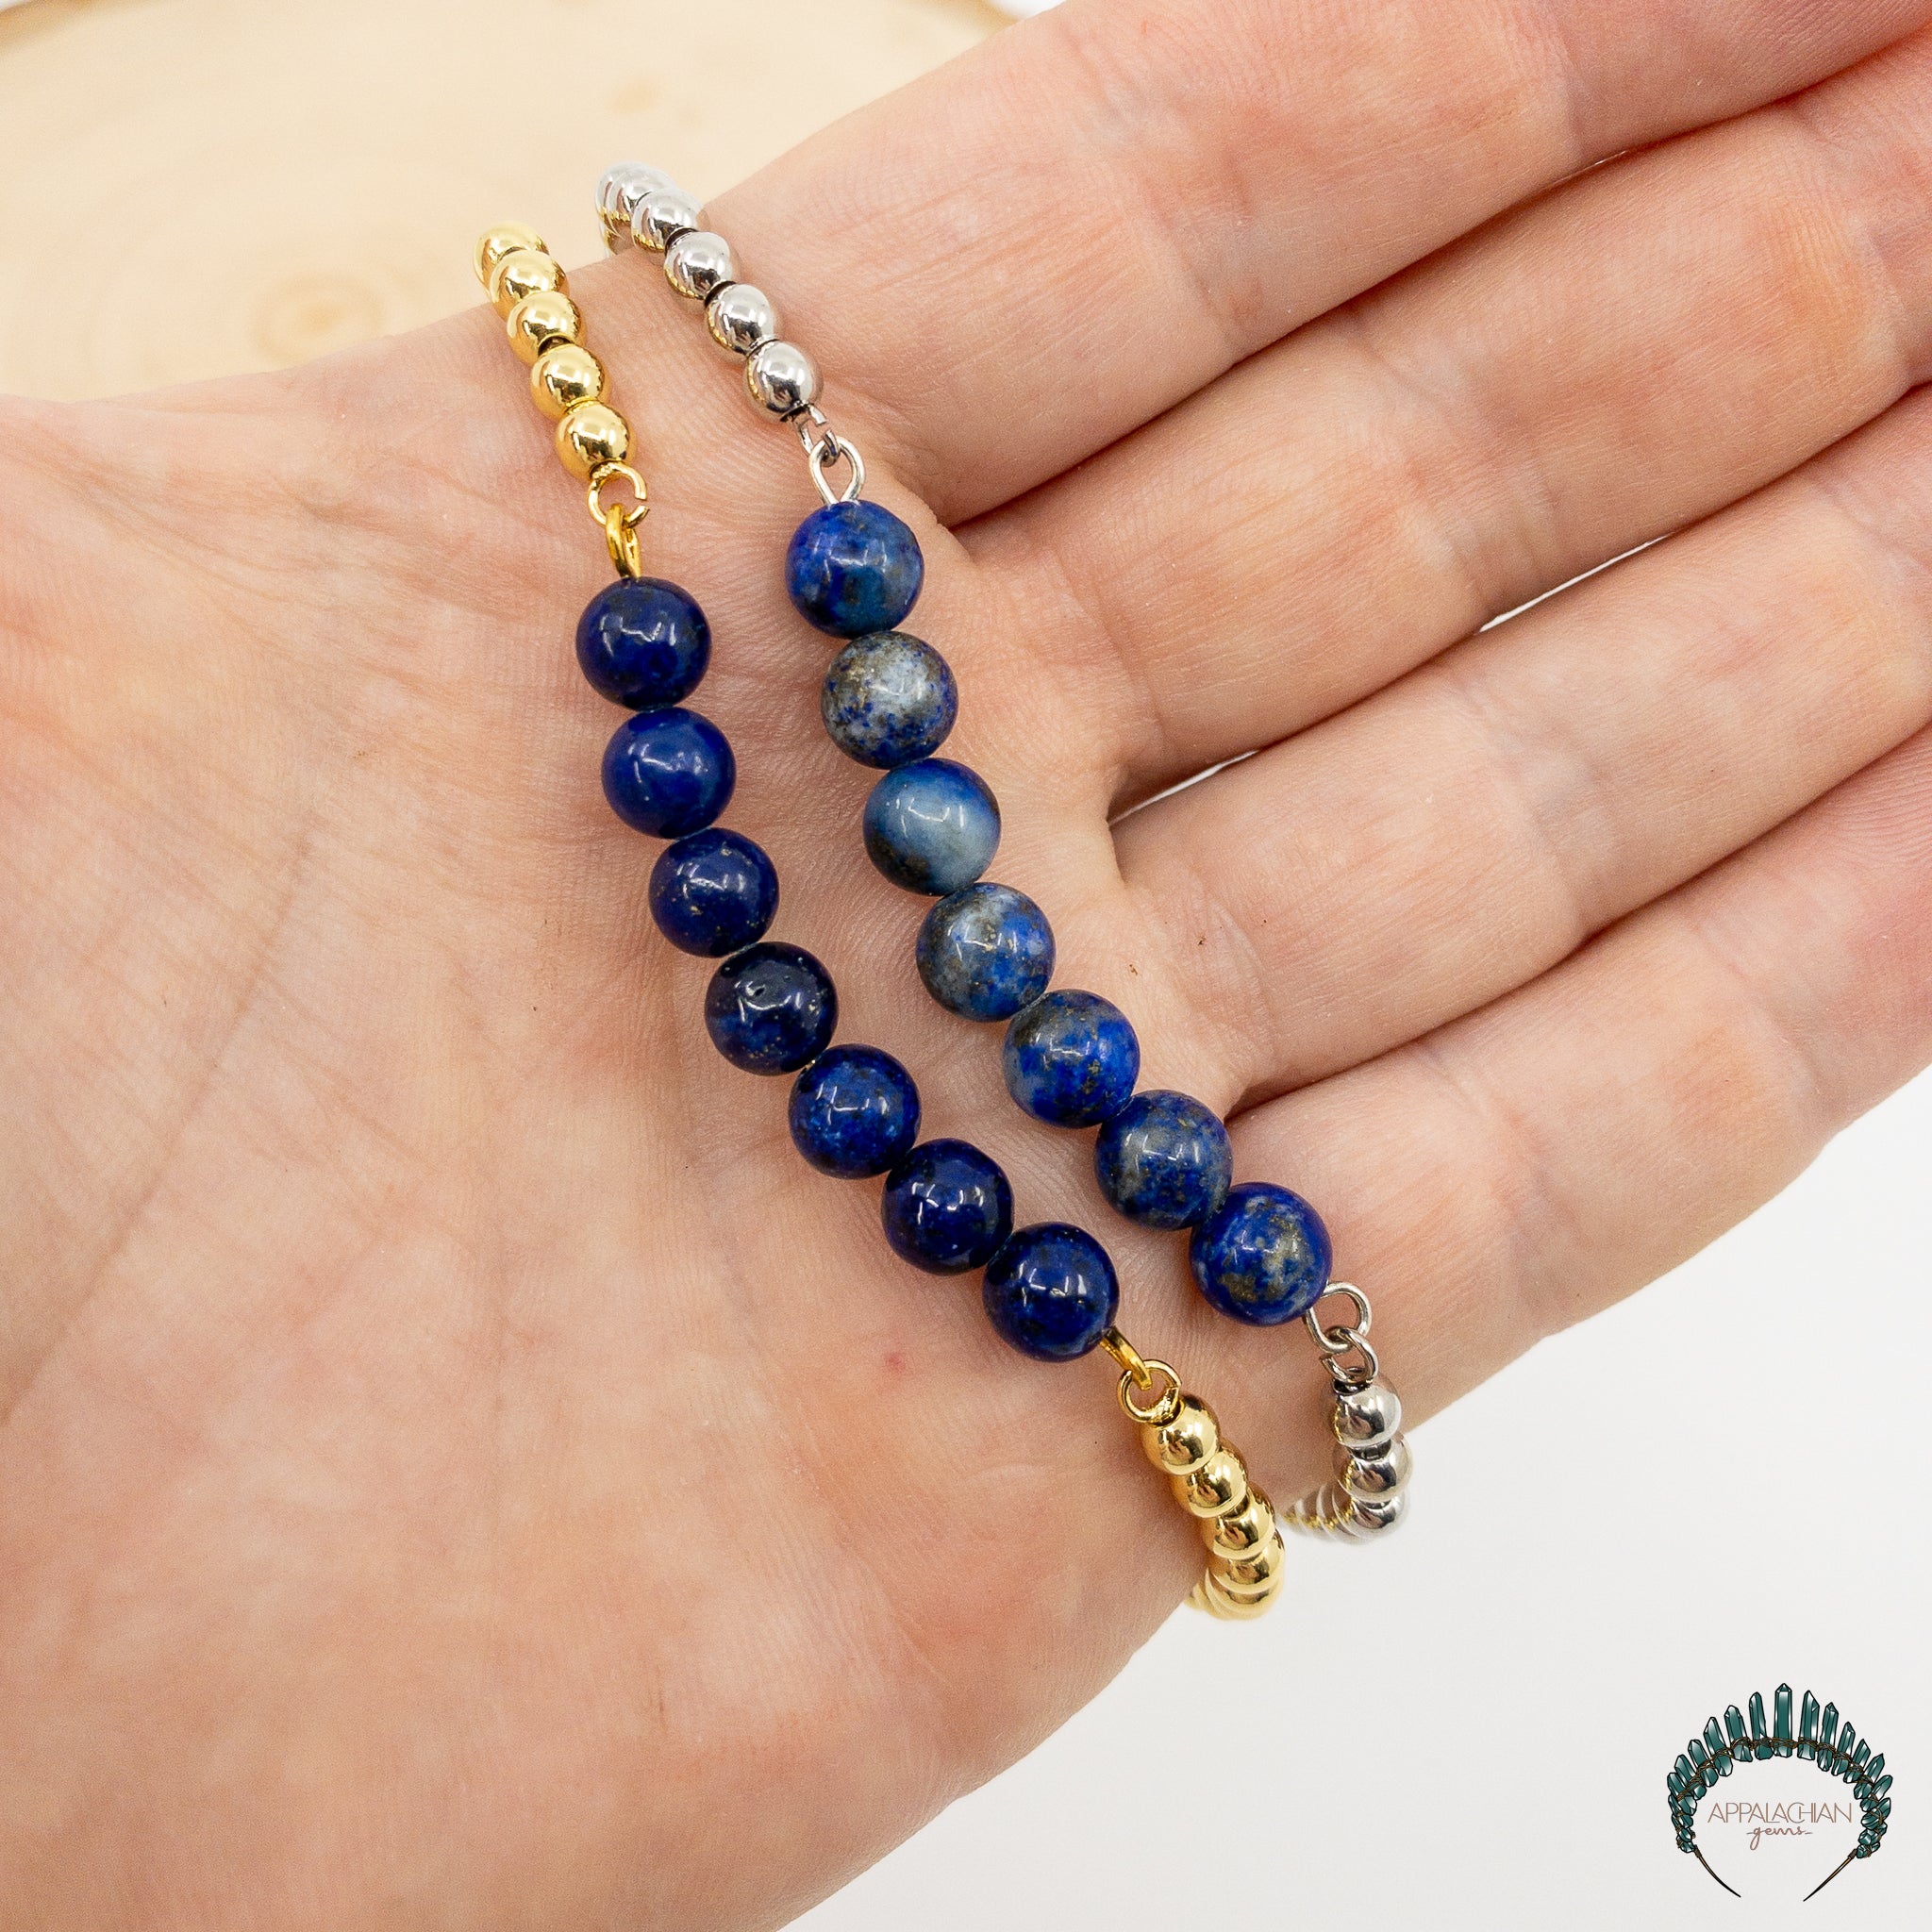 Buy Lapis Lazuli Bracelet online in India | Vastu Products in India